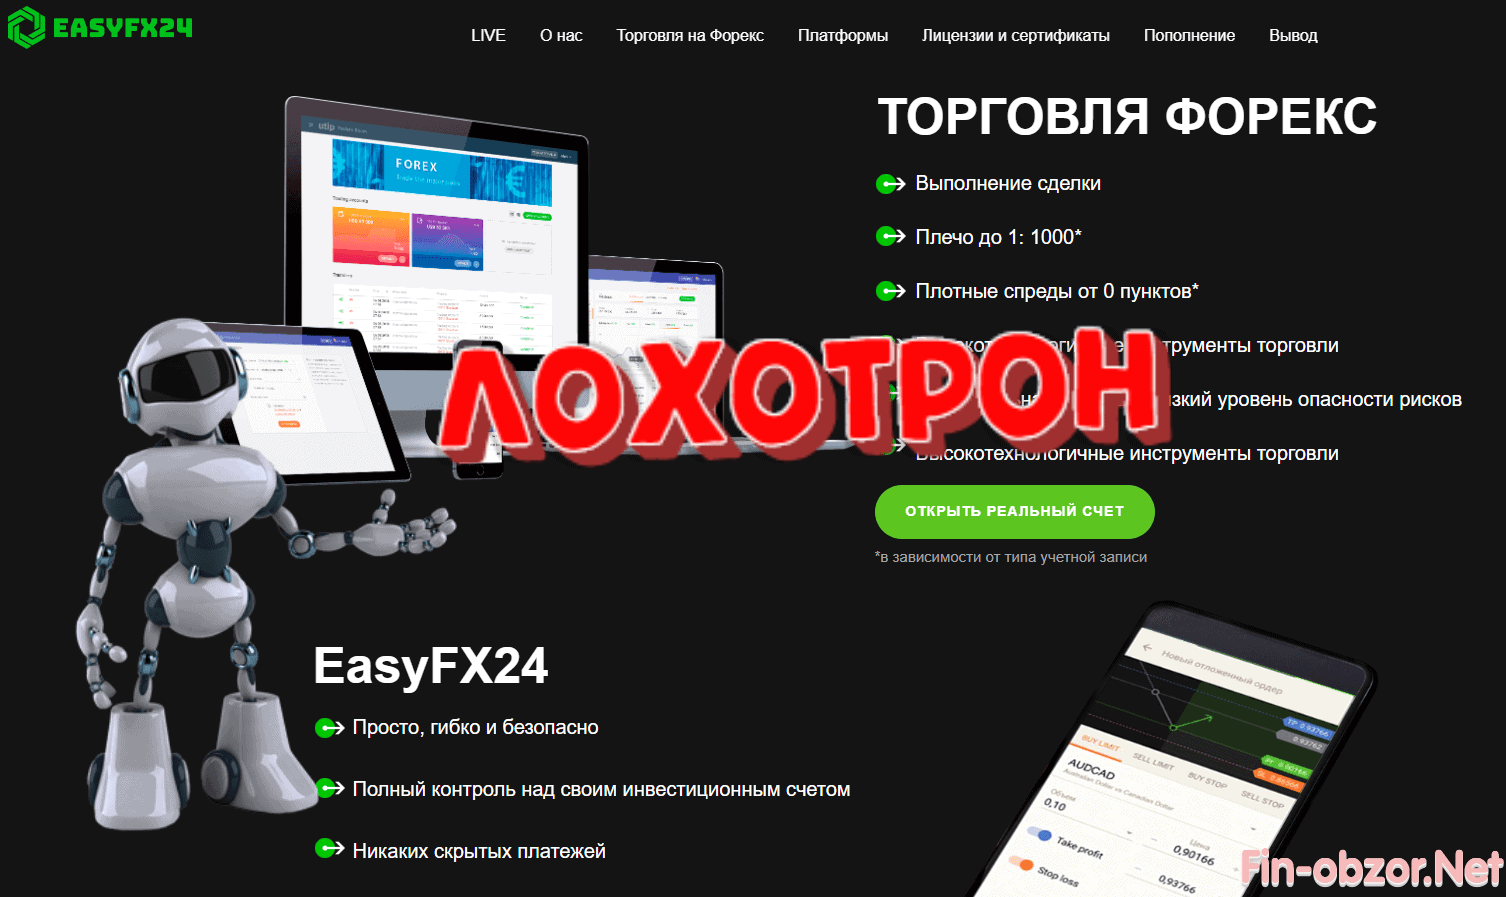 Брокер EasyFX24 (easyfx24.com) - реальные отзывы и обзор